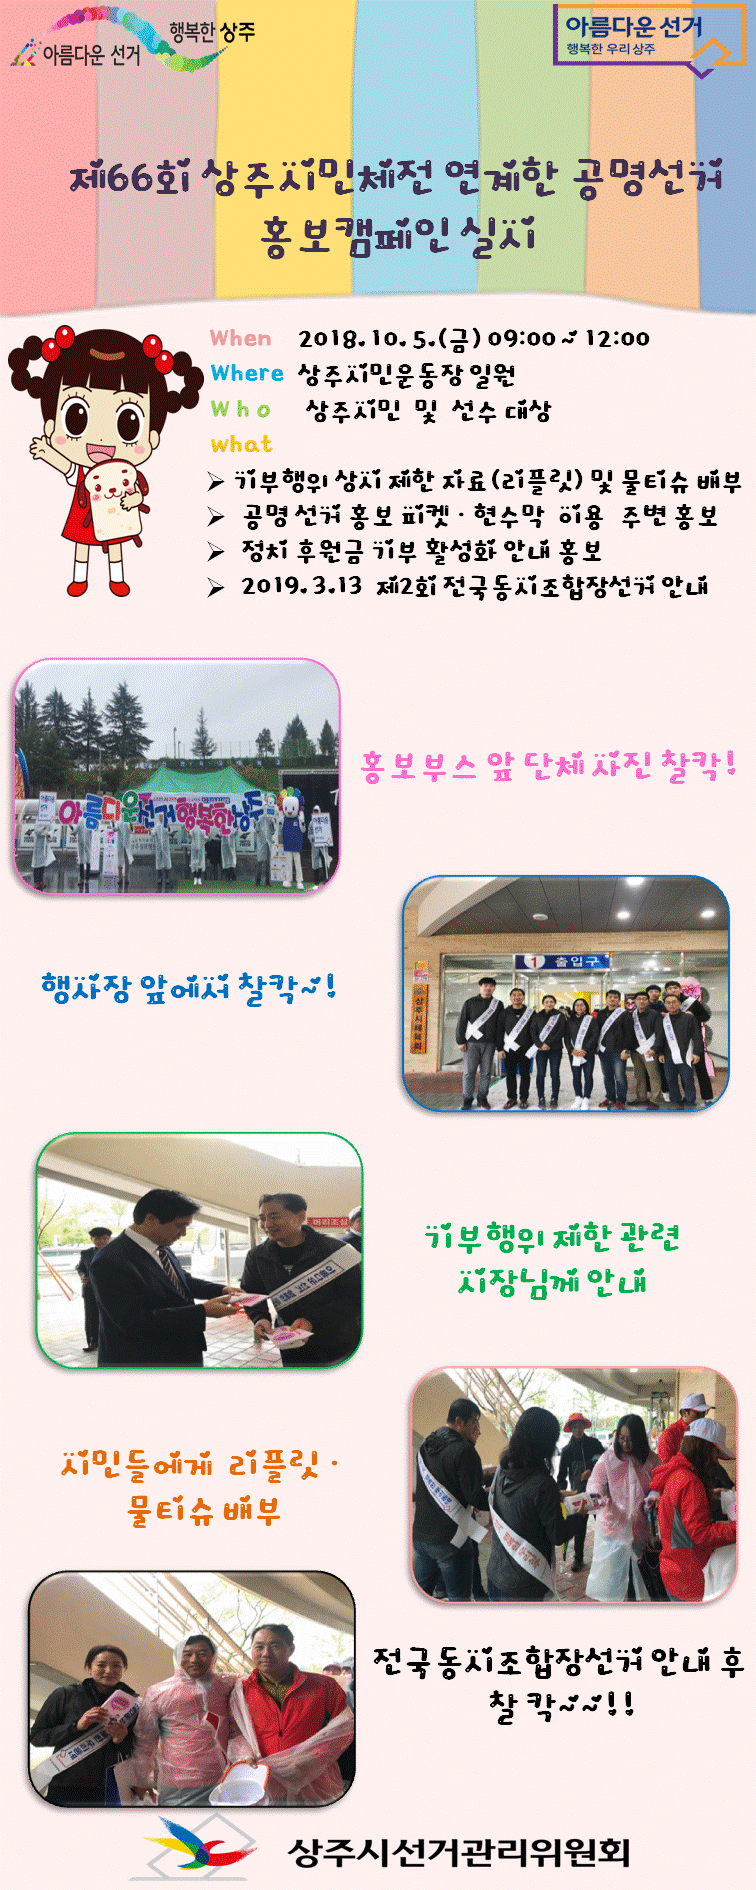 제66회 상주시민체전과 연계한 공명선거 등 홍보캠페인 실시